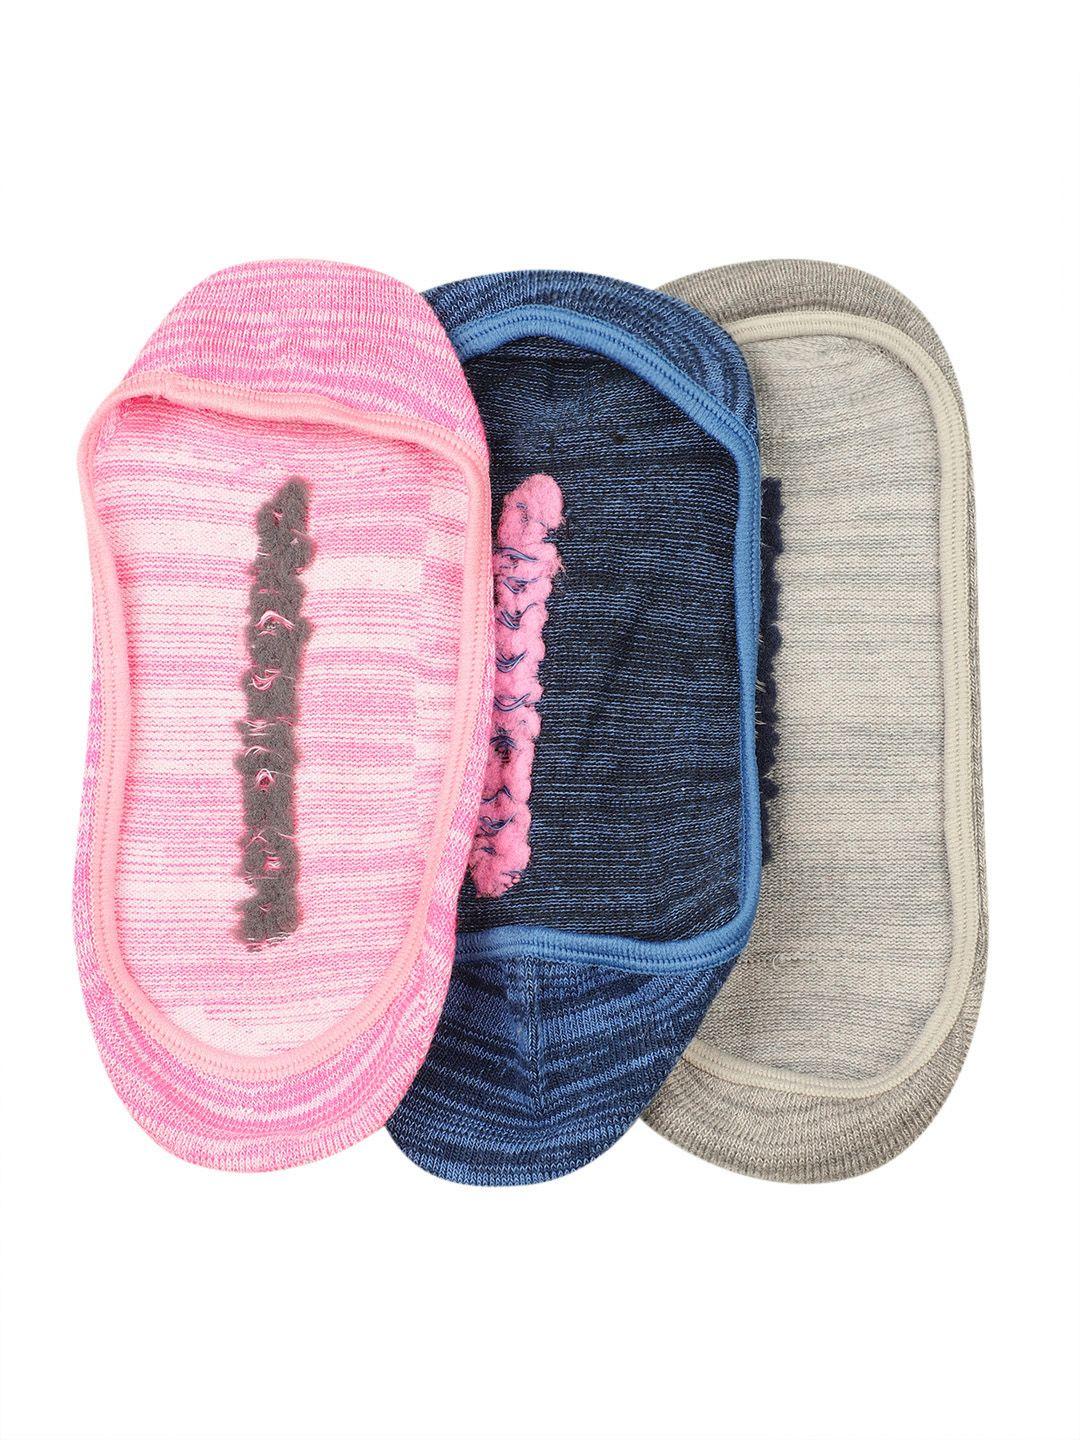 skechers women pack of 3 brand logo woven design shoe liner socks